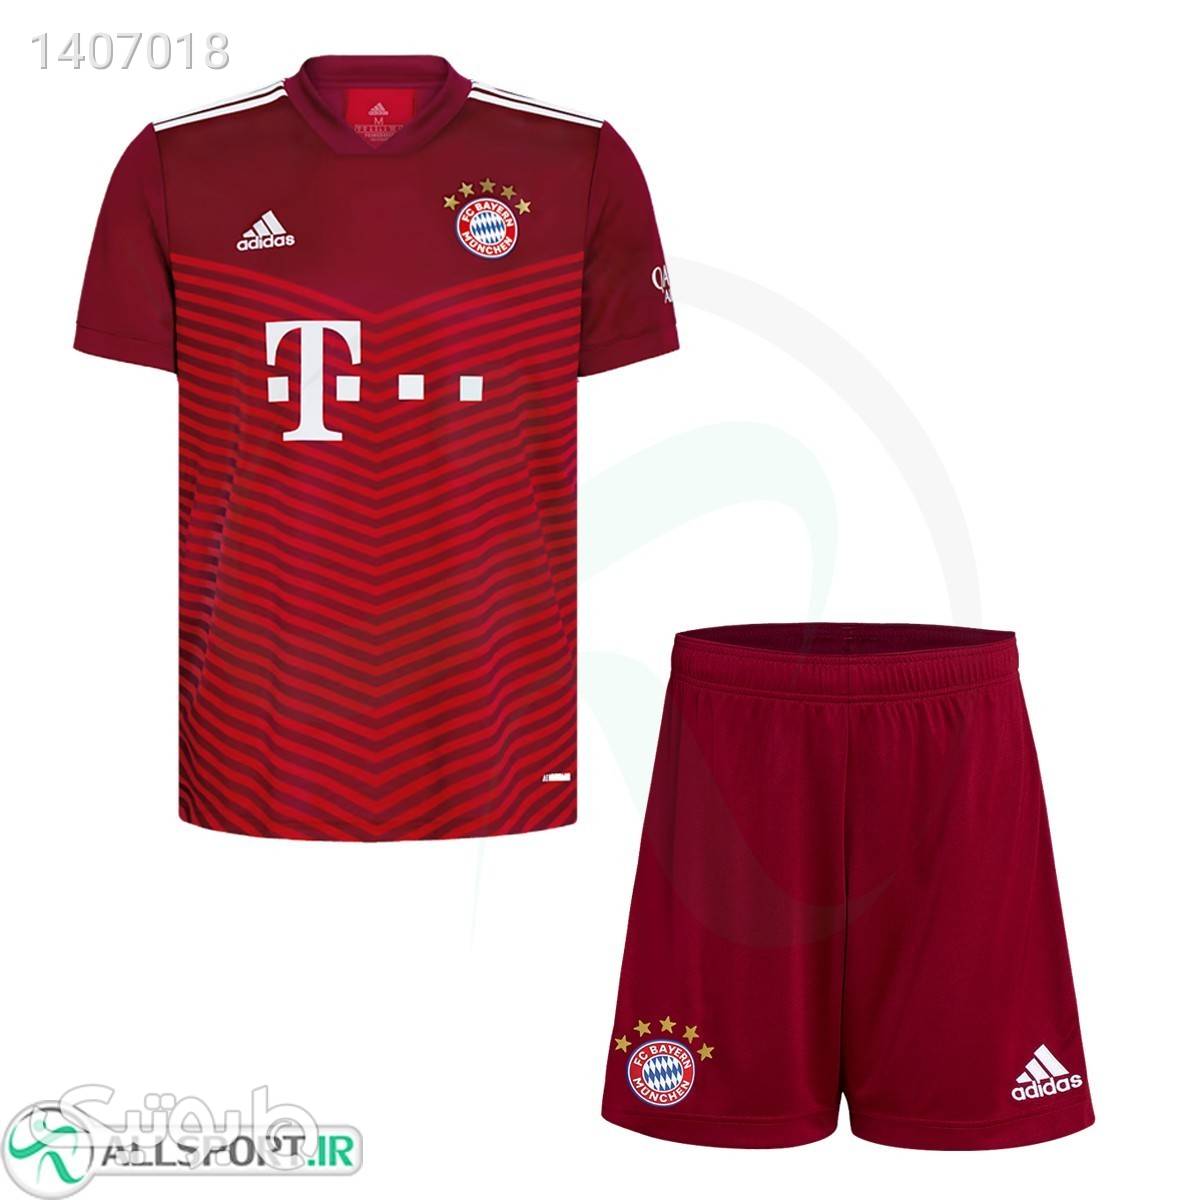 پیراهن شورت بچه گانه اول بایرمونیخ Bayern Munich202122 Home shirt amp; short Soccer Jersey زرشکی لباس کودک پسرانه